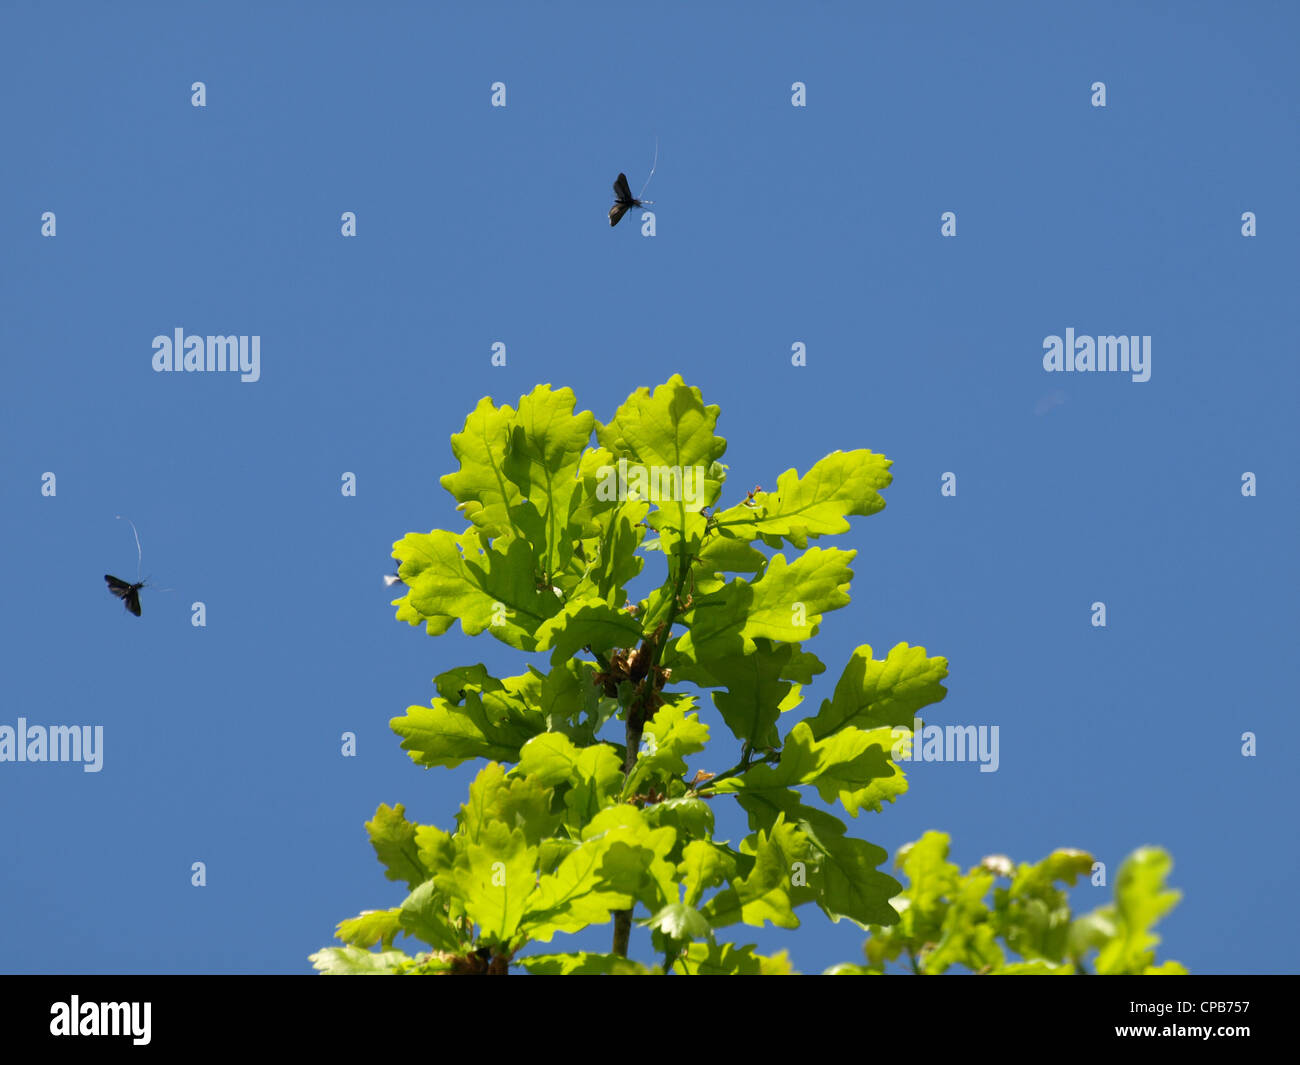 Green longhorn moth / Adela reaumurella swarming around a oak / Langhornmotten schwärmen um Eiche Stock Photo